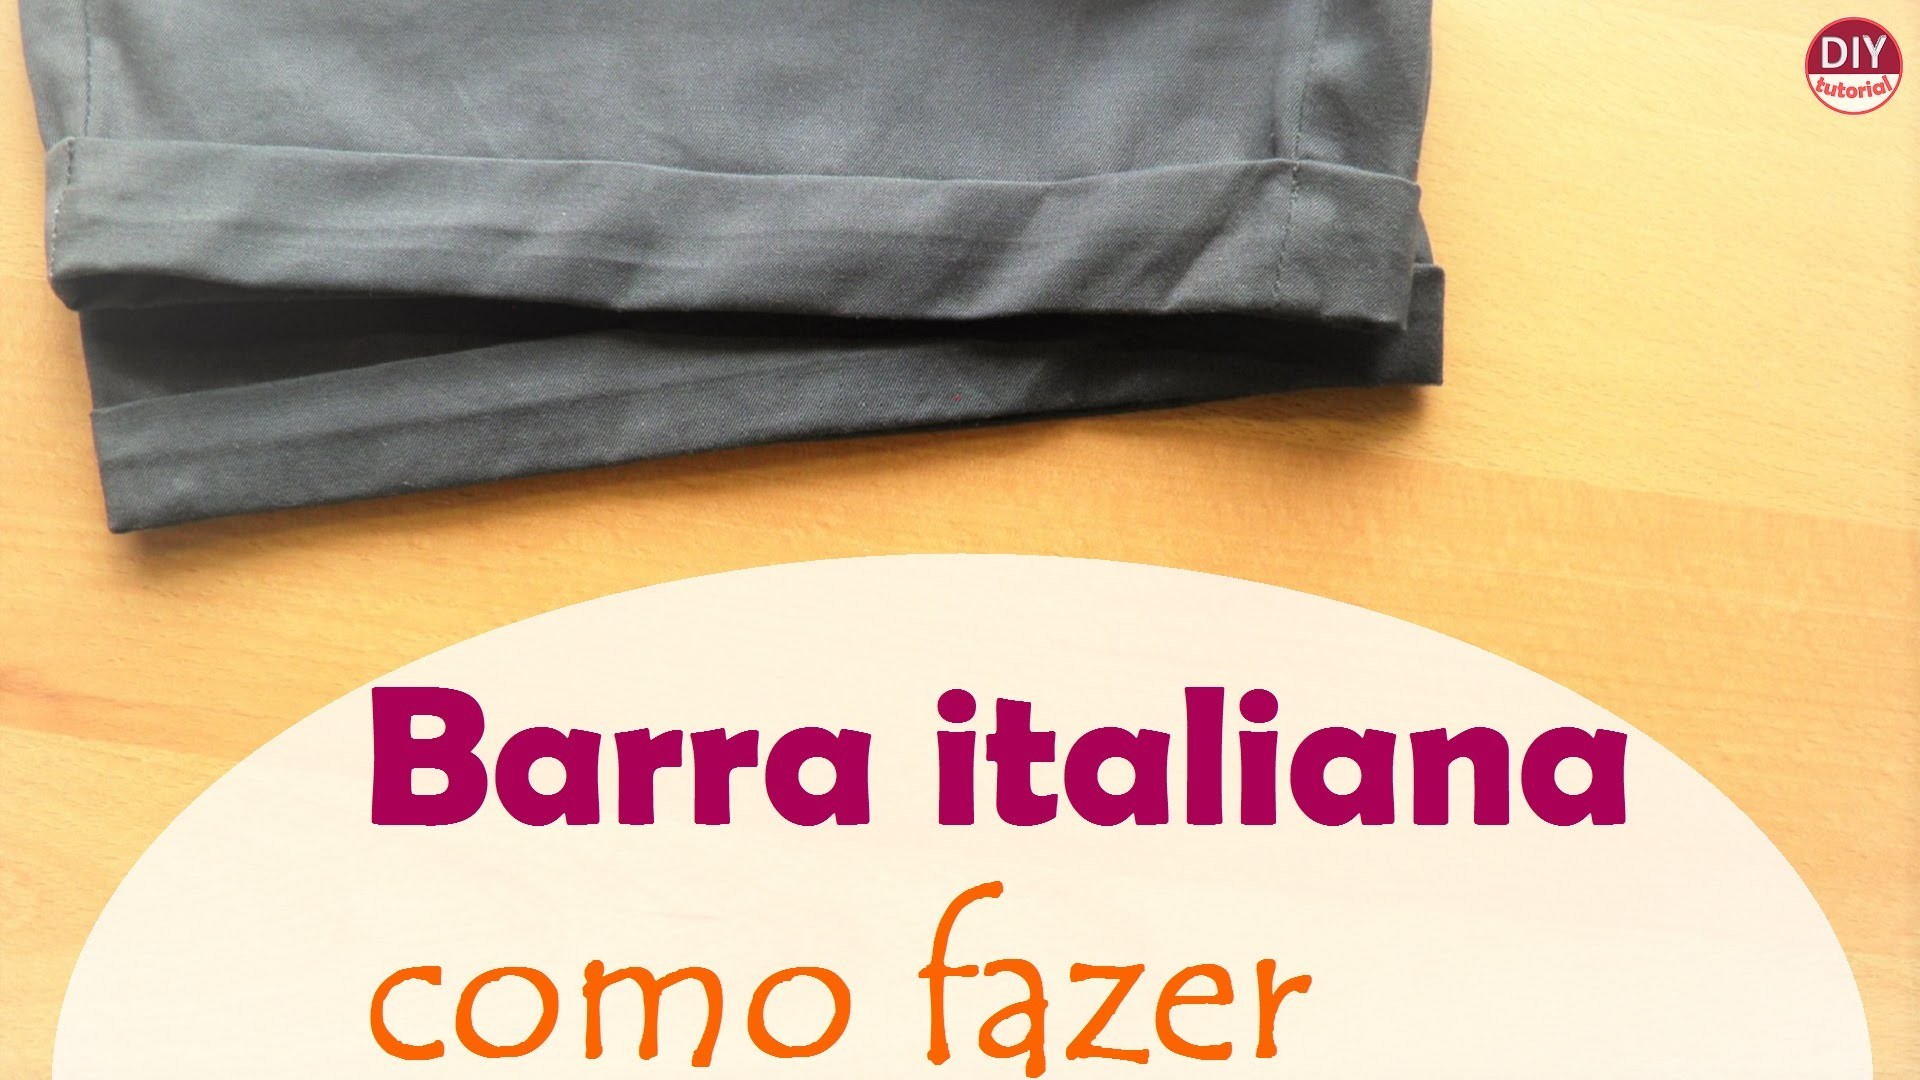 Barra italiana: como fazer acabamento em shorts, calças ou mangas (DIY Tutorial) - VEDA#26